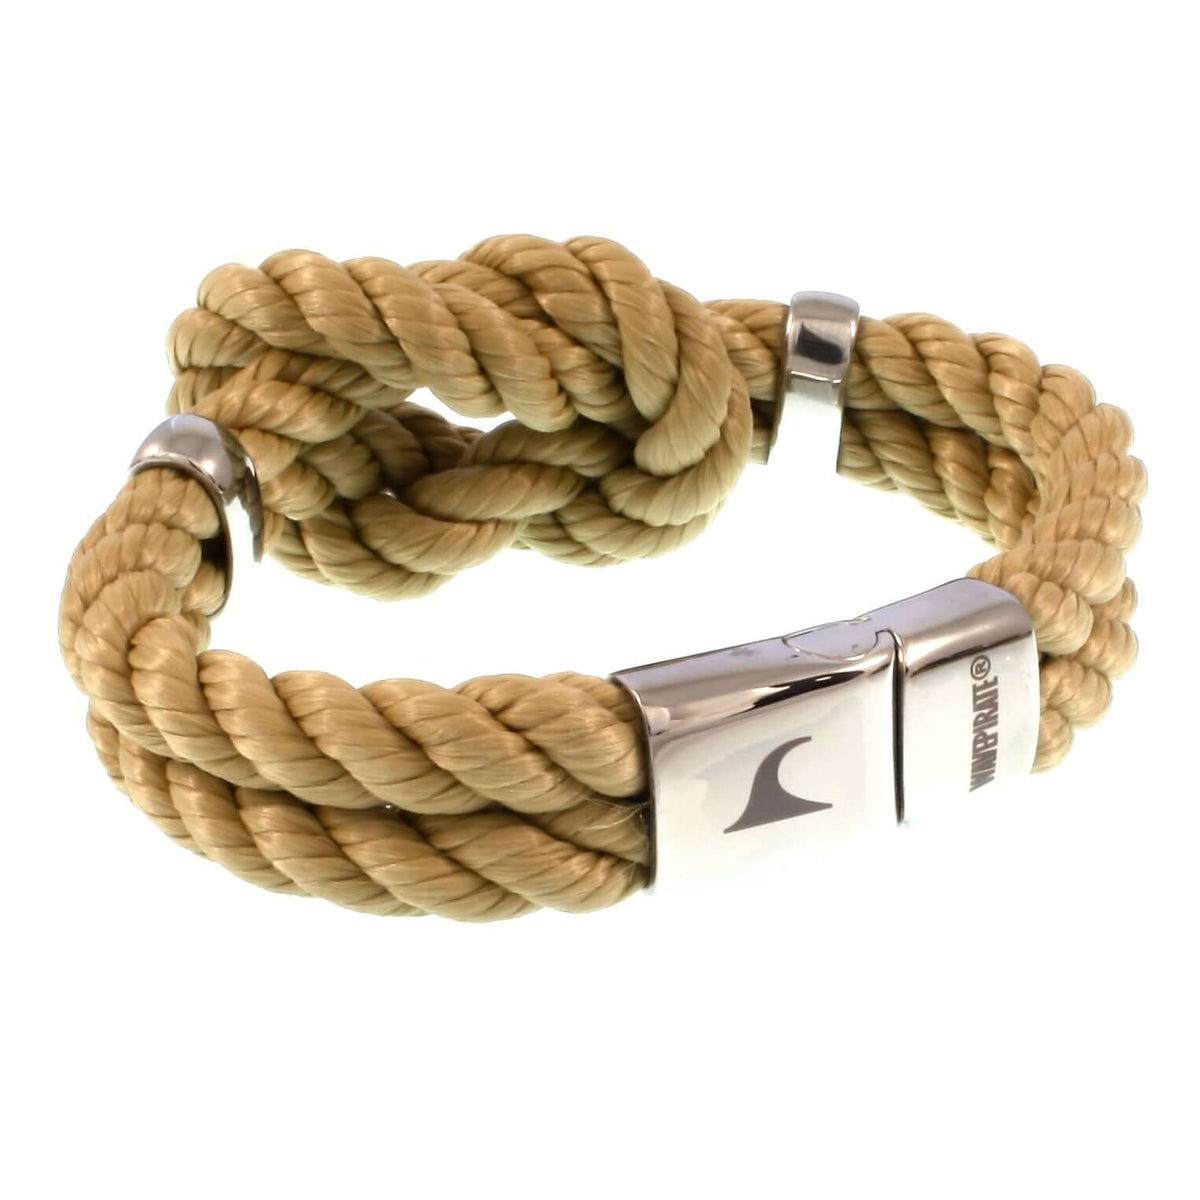 Damen-Segeltau-armband-pure-beige-natur-silber-geflochten-kordel-Edelstahlverschluss-vorn-wavepirate-shop-k